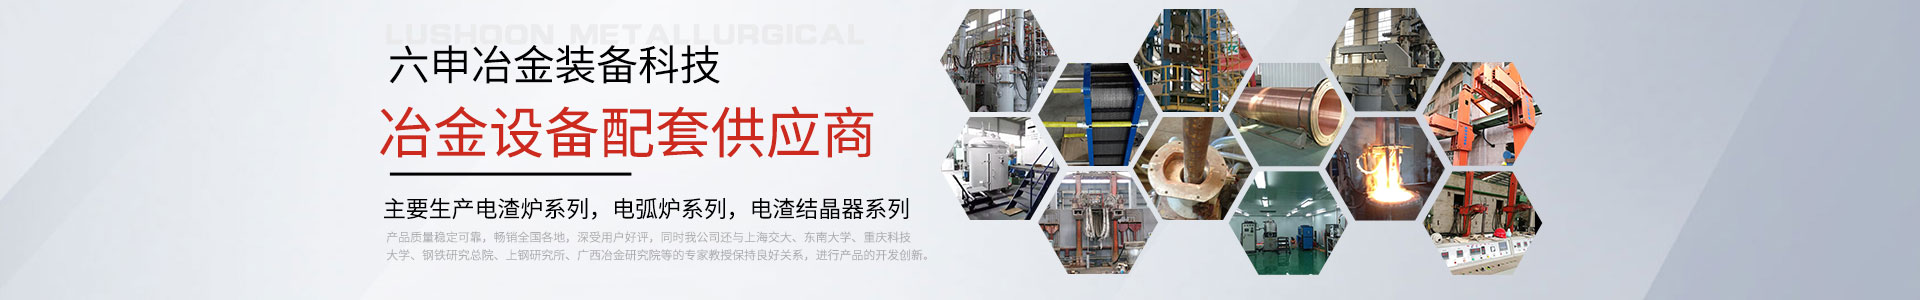 江苏六申冶金装备科技有限公司